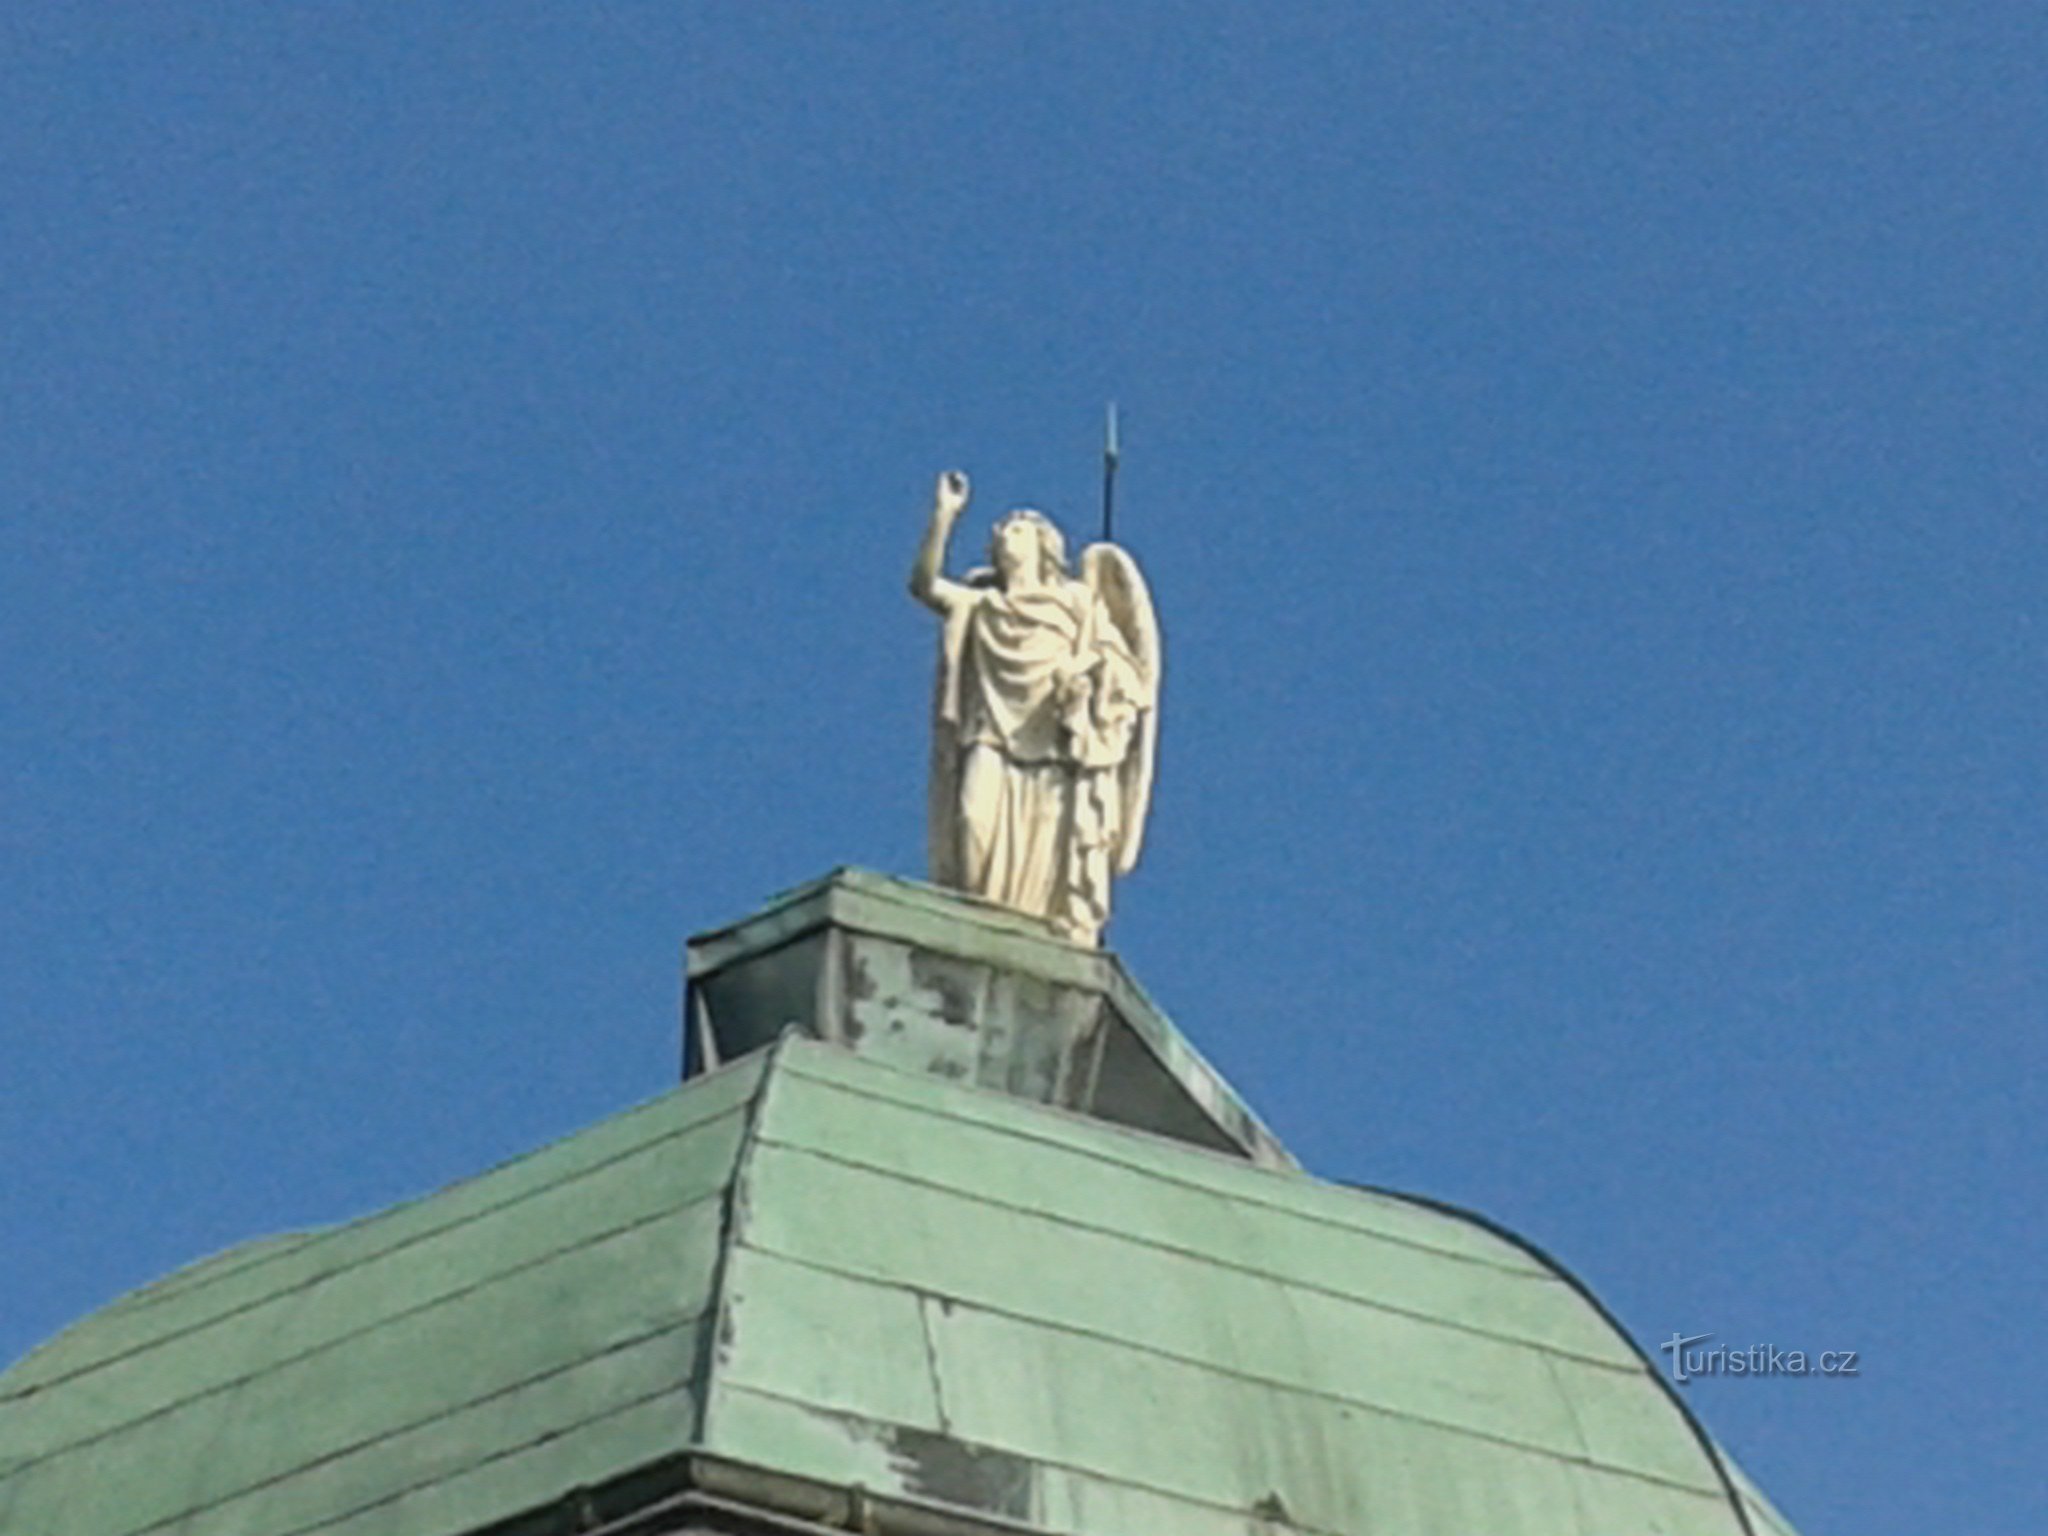 estátua de um anjo no prédio da administração